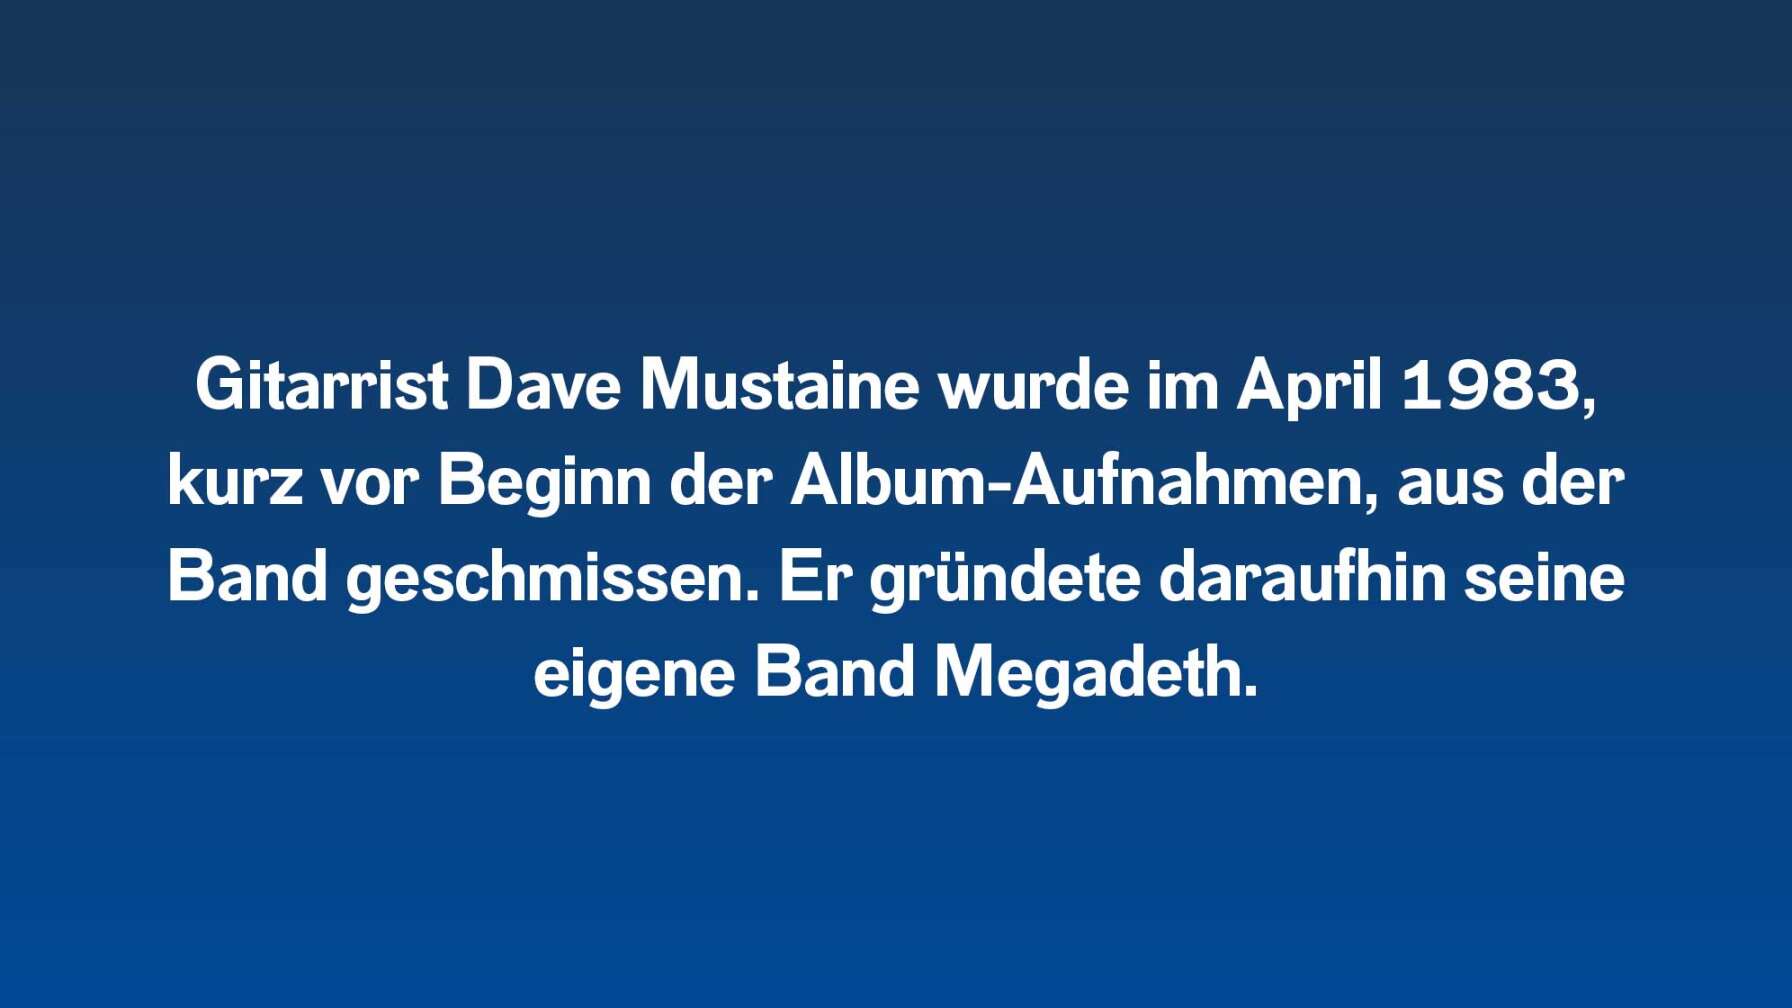 Gitarrist Dave Mustaine wurde im April 1983, kurz vor Beginn der Album-Aufnahmen, aus der Band geschmissen. Er gründete daraufhin seine eigene Band Megadeth.